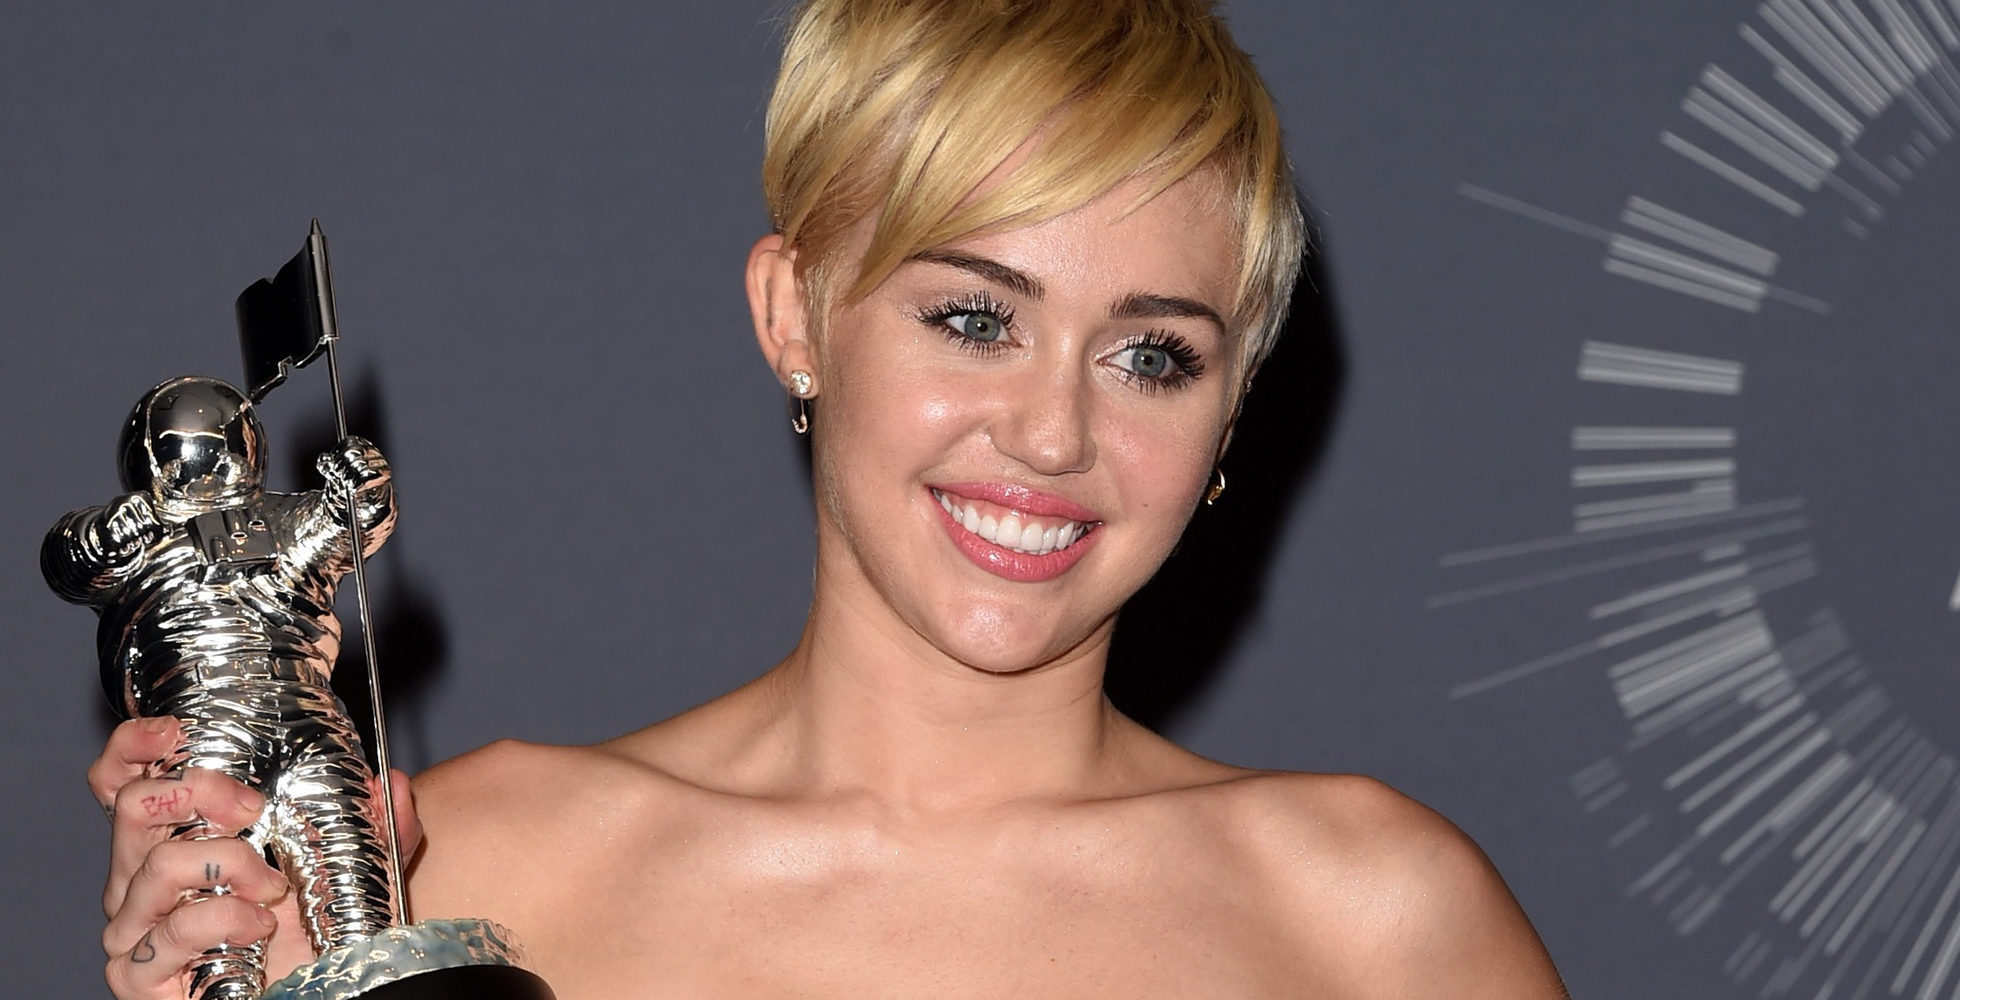 La nueva vida de Miley Cyrus: deja la marihuana y lanza nuevo single